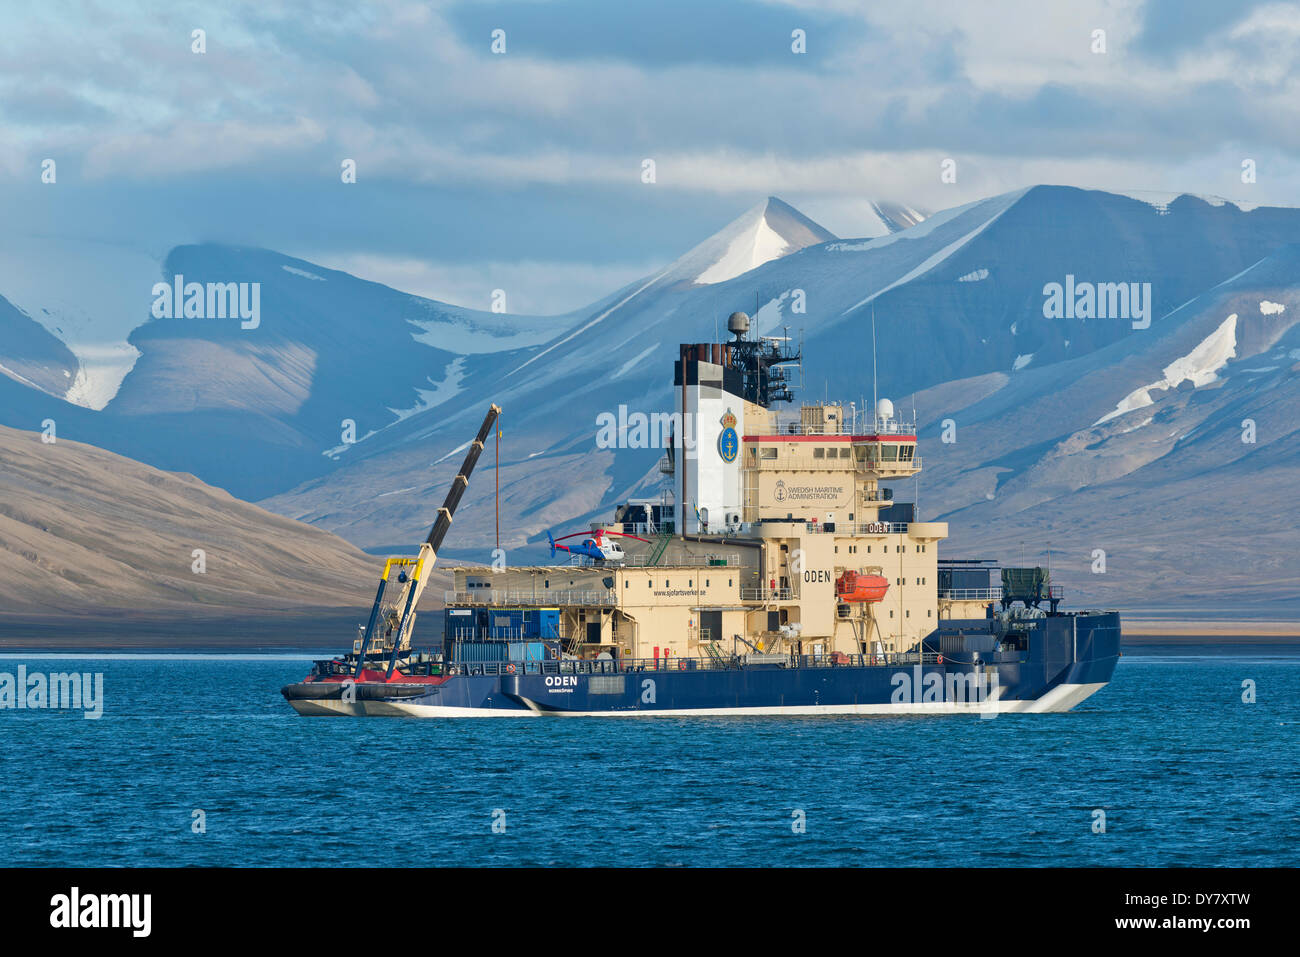 Oden, svedese per la ricerca e la nave rompighiaccio, Isfjorden, Longyearbyen, isola Spitsbergen, arcipelago delle Svalbard Foto Stock